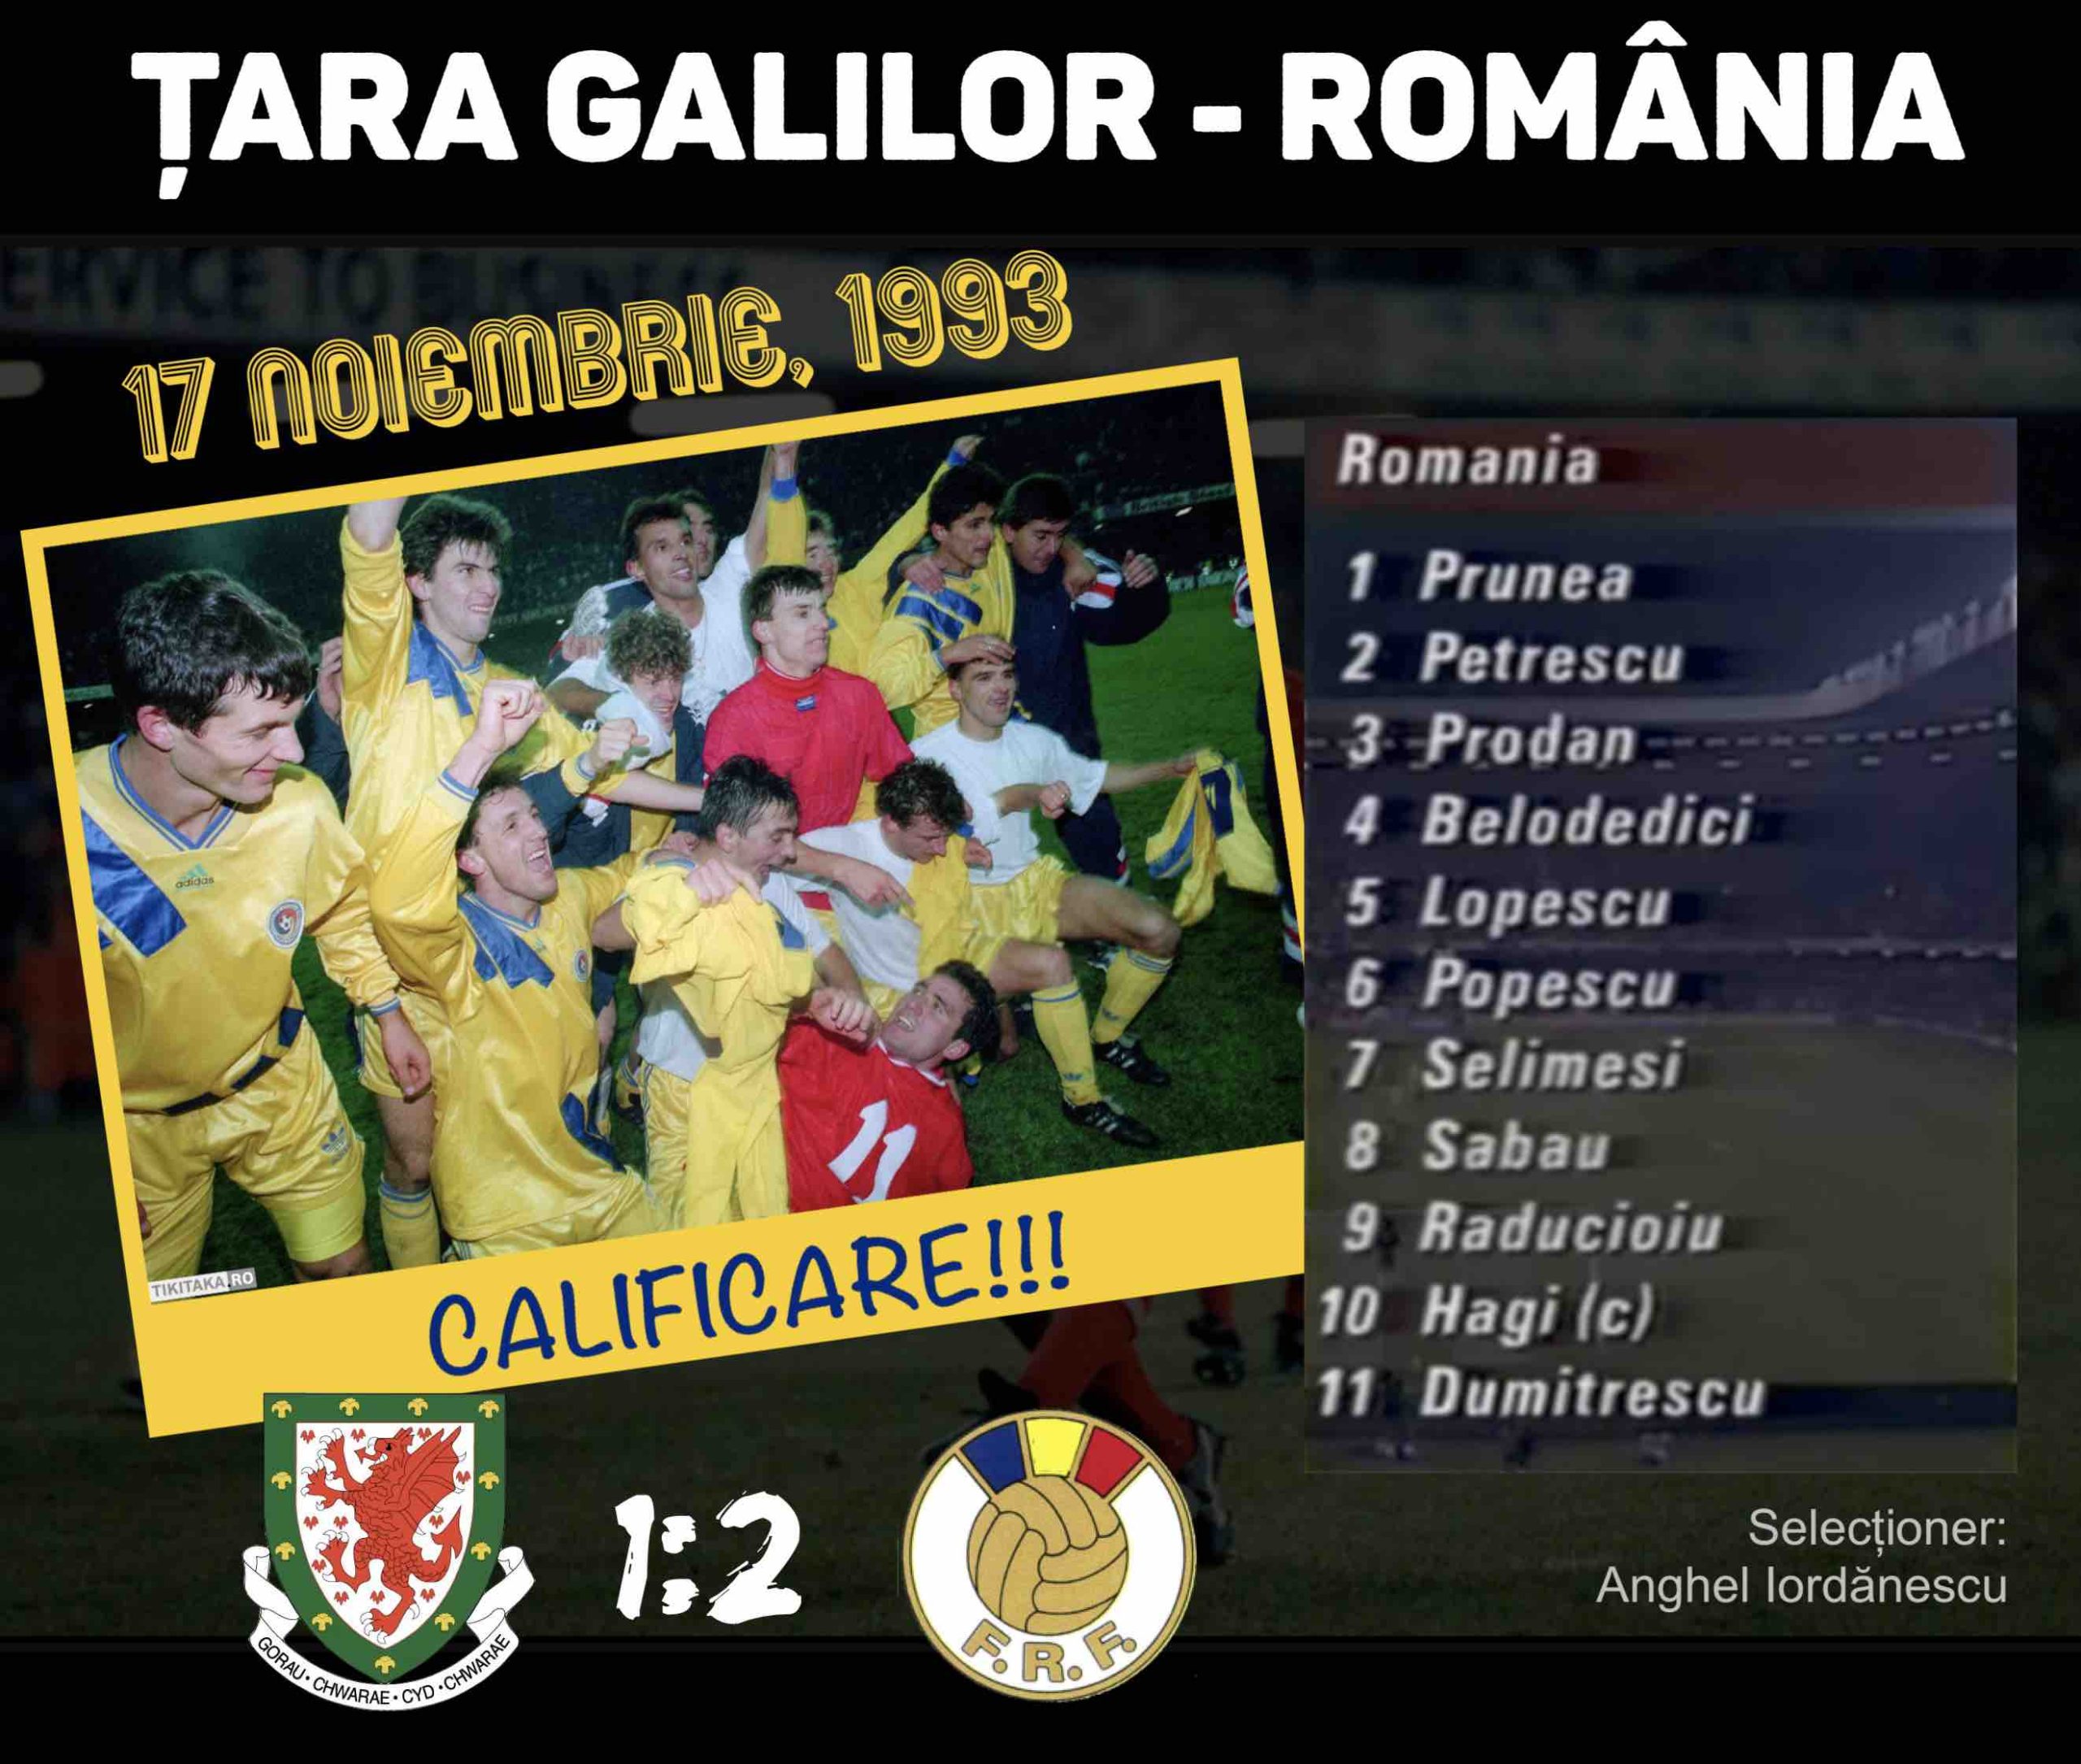 Tara Galilor - Romania 1993